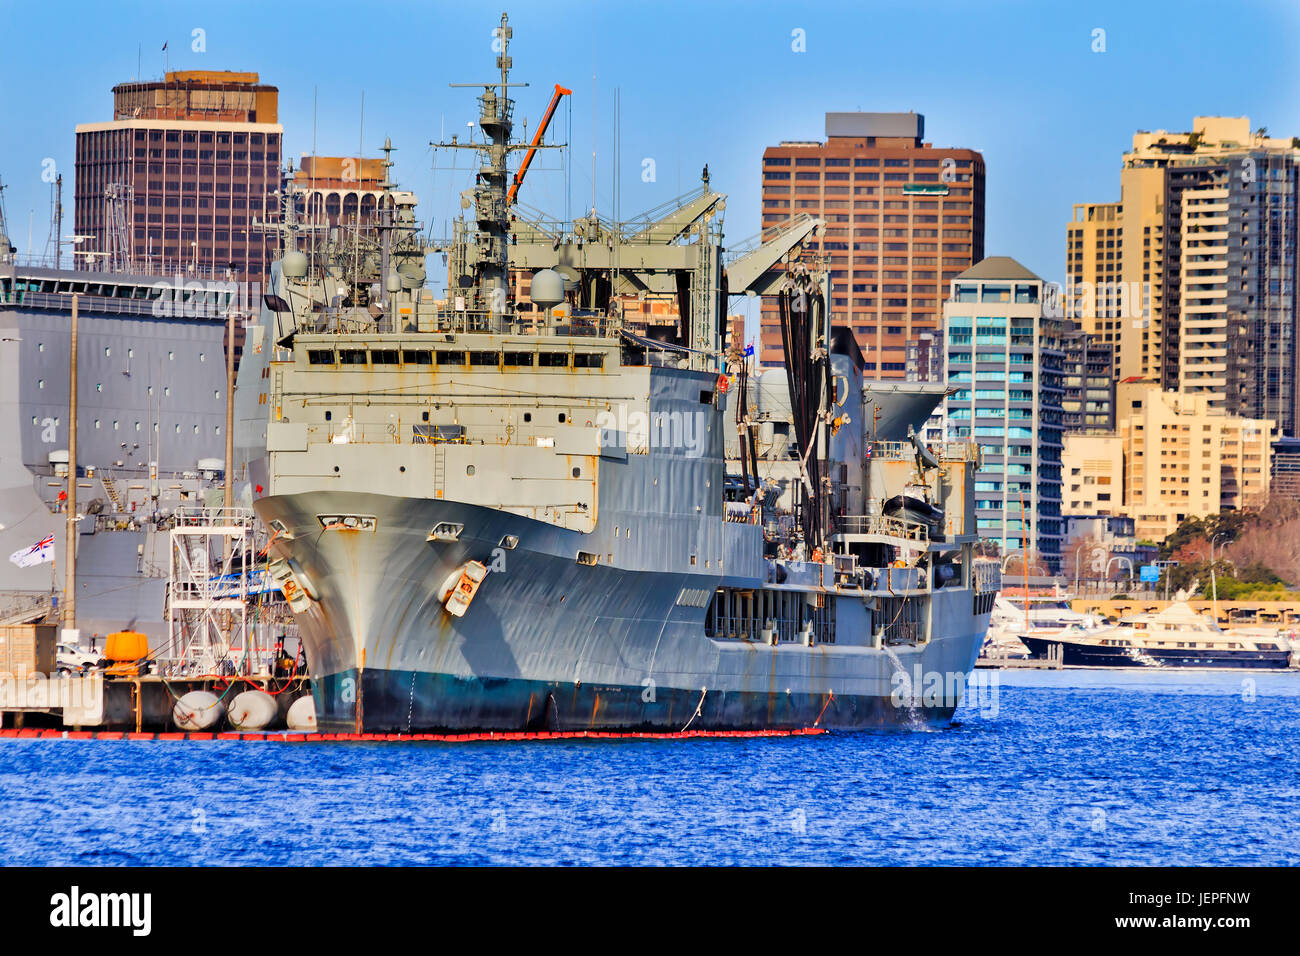 L'avant du navire australien de Sa Majesté à la base de la marine militaire à Sydney Cove sur une journée ensoleillée à l'encontre des tours d'habitation Maisons. Banque D'Images